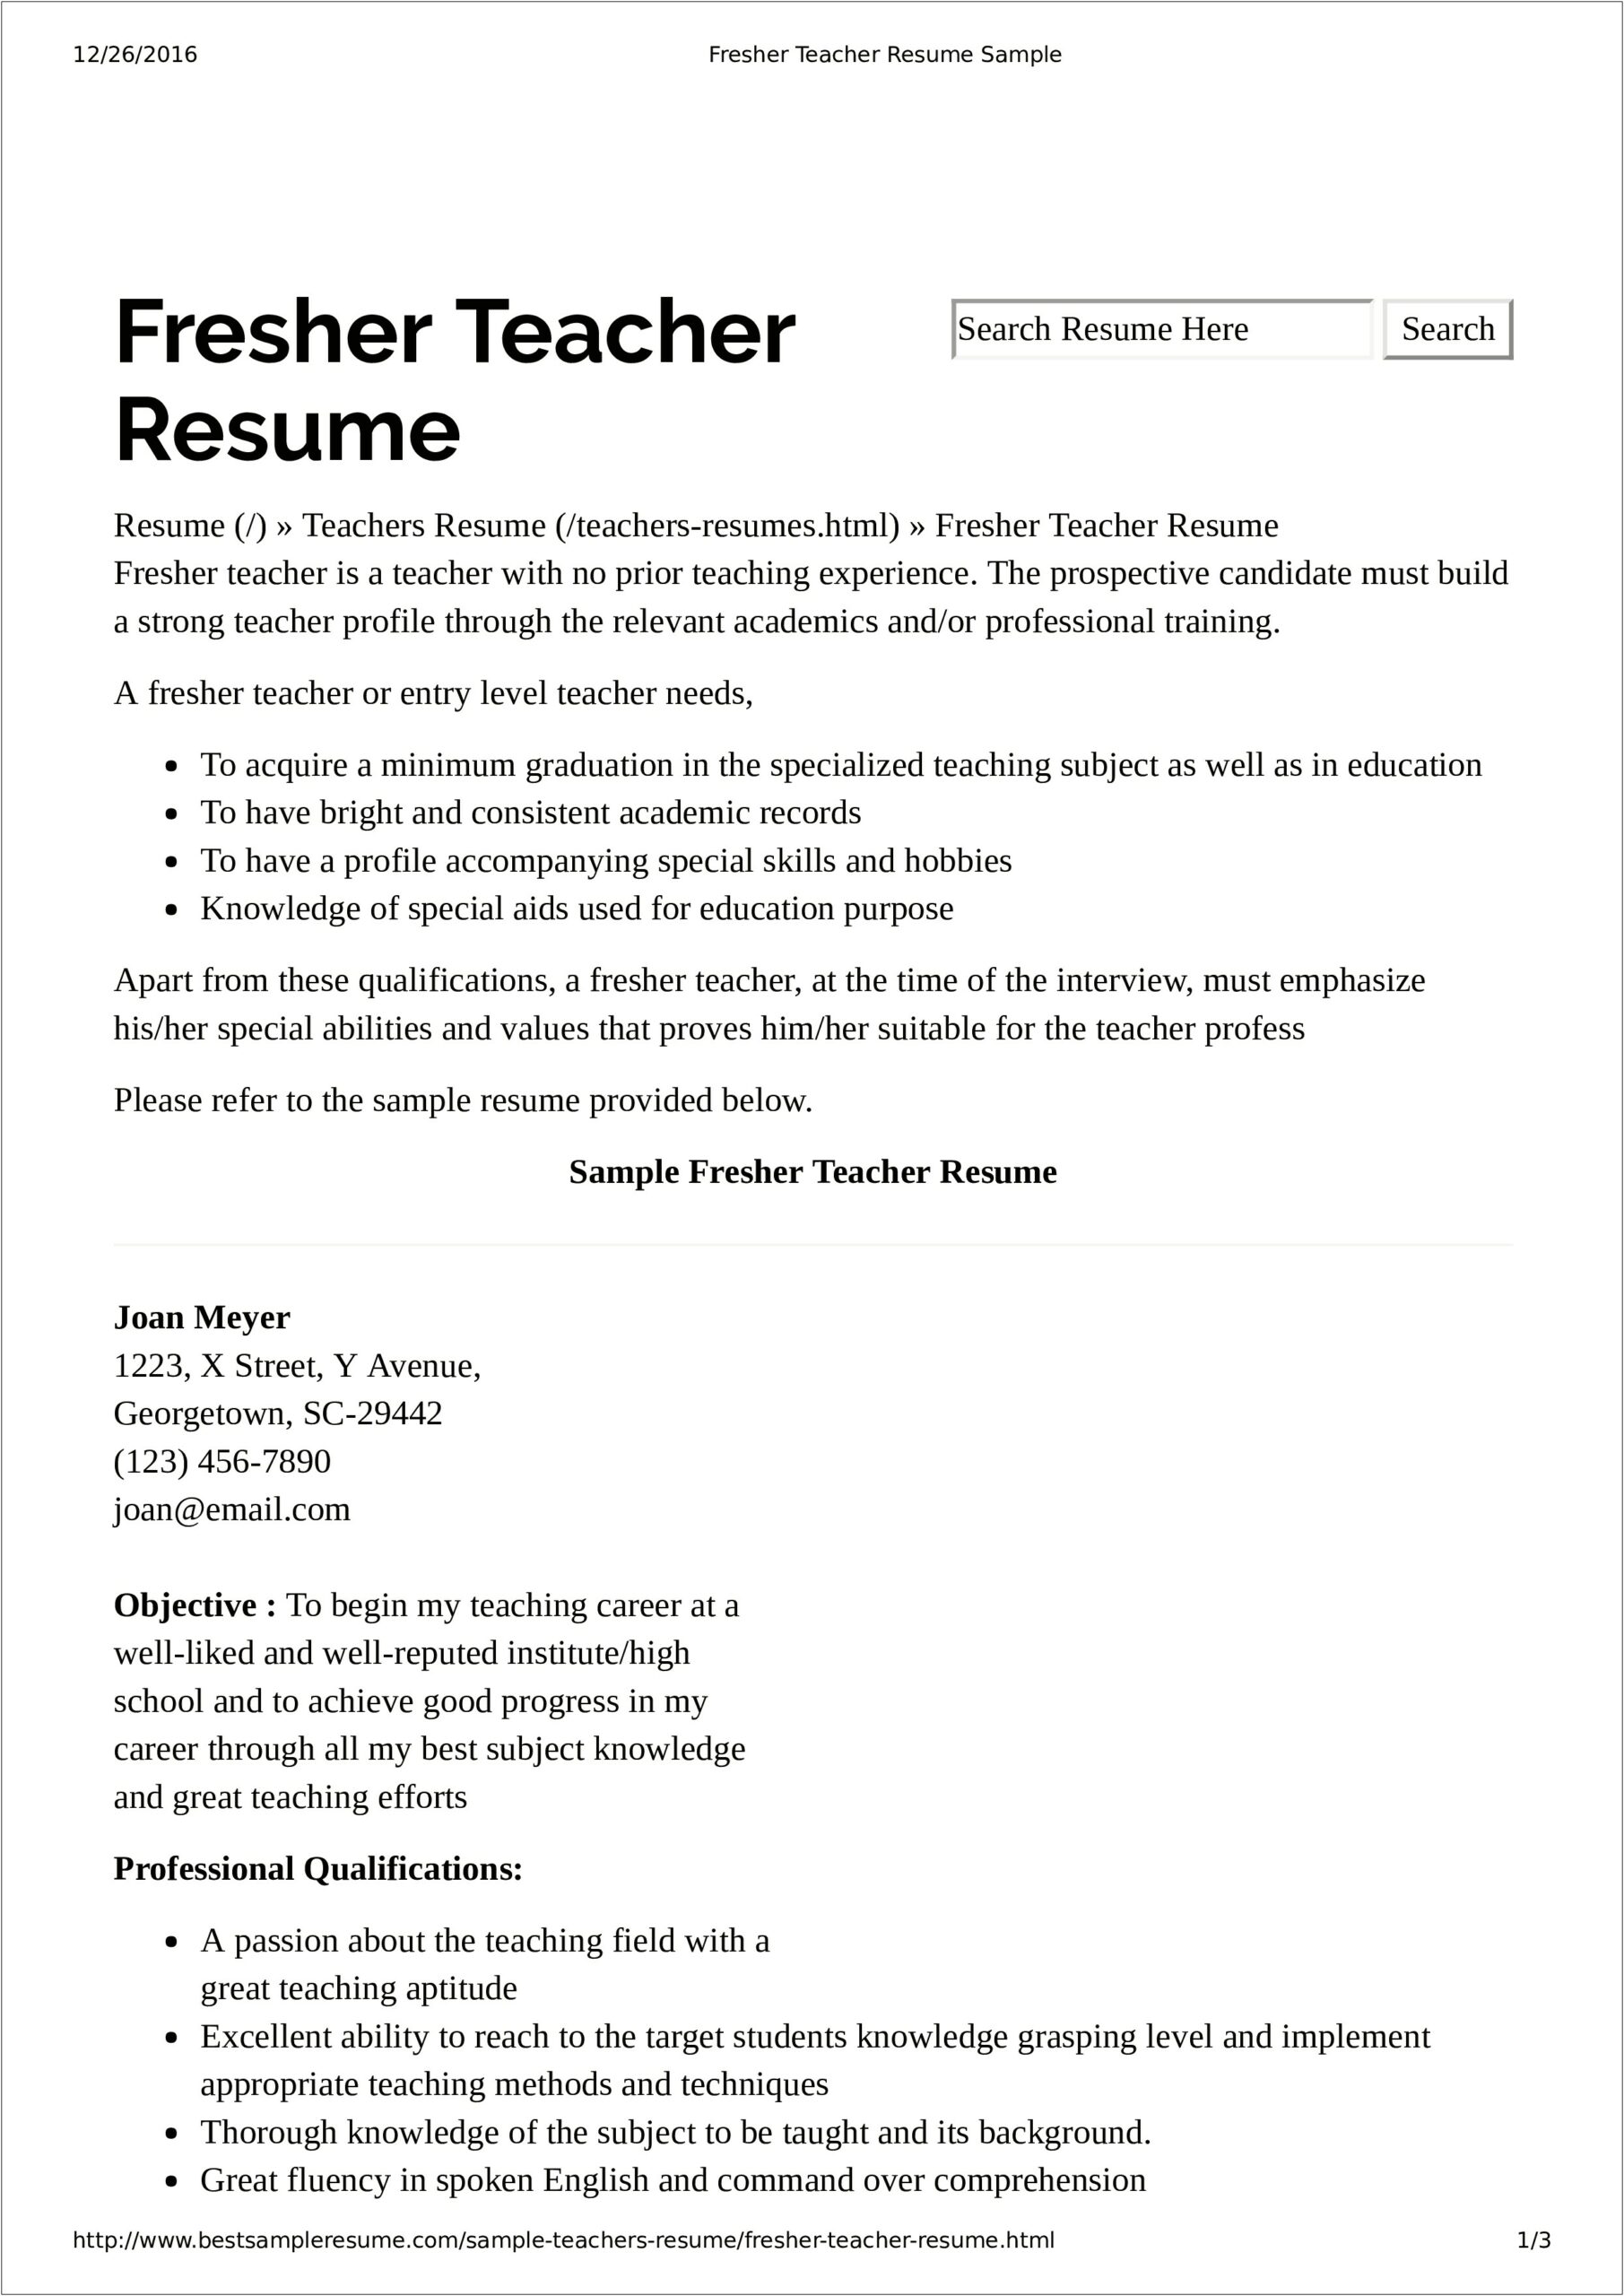 Sample Resume For Preschool Teacher Pdf